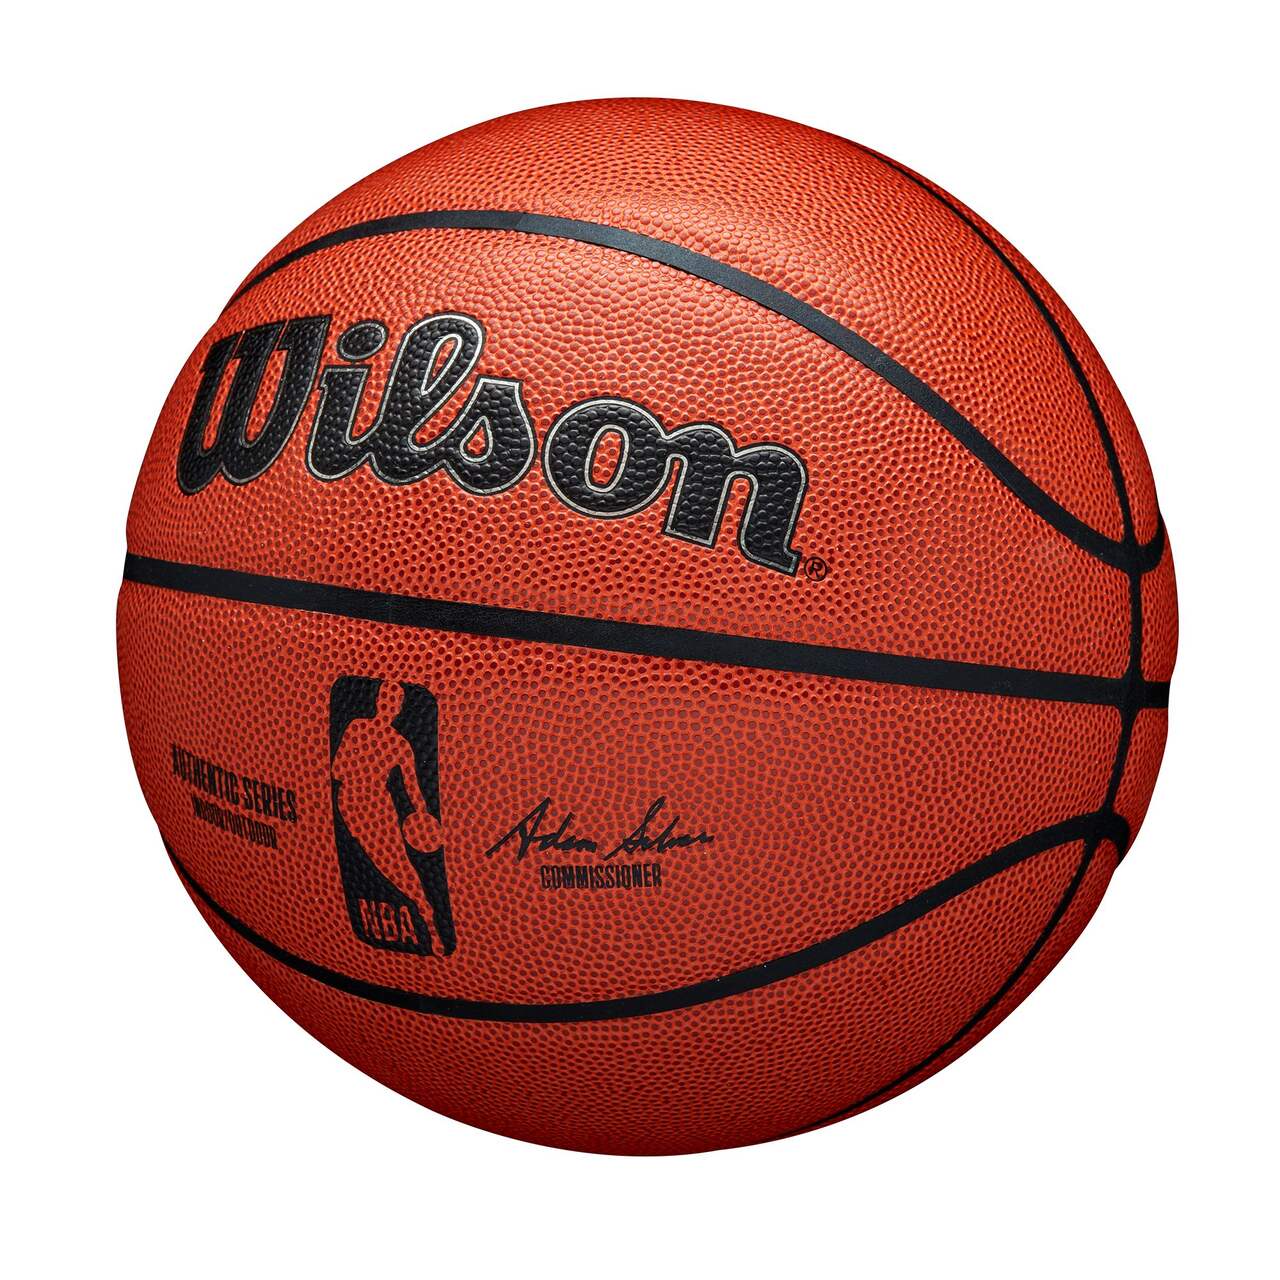 Ballon de basketball Wilson NBA série Authentic, intérieur